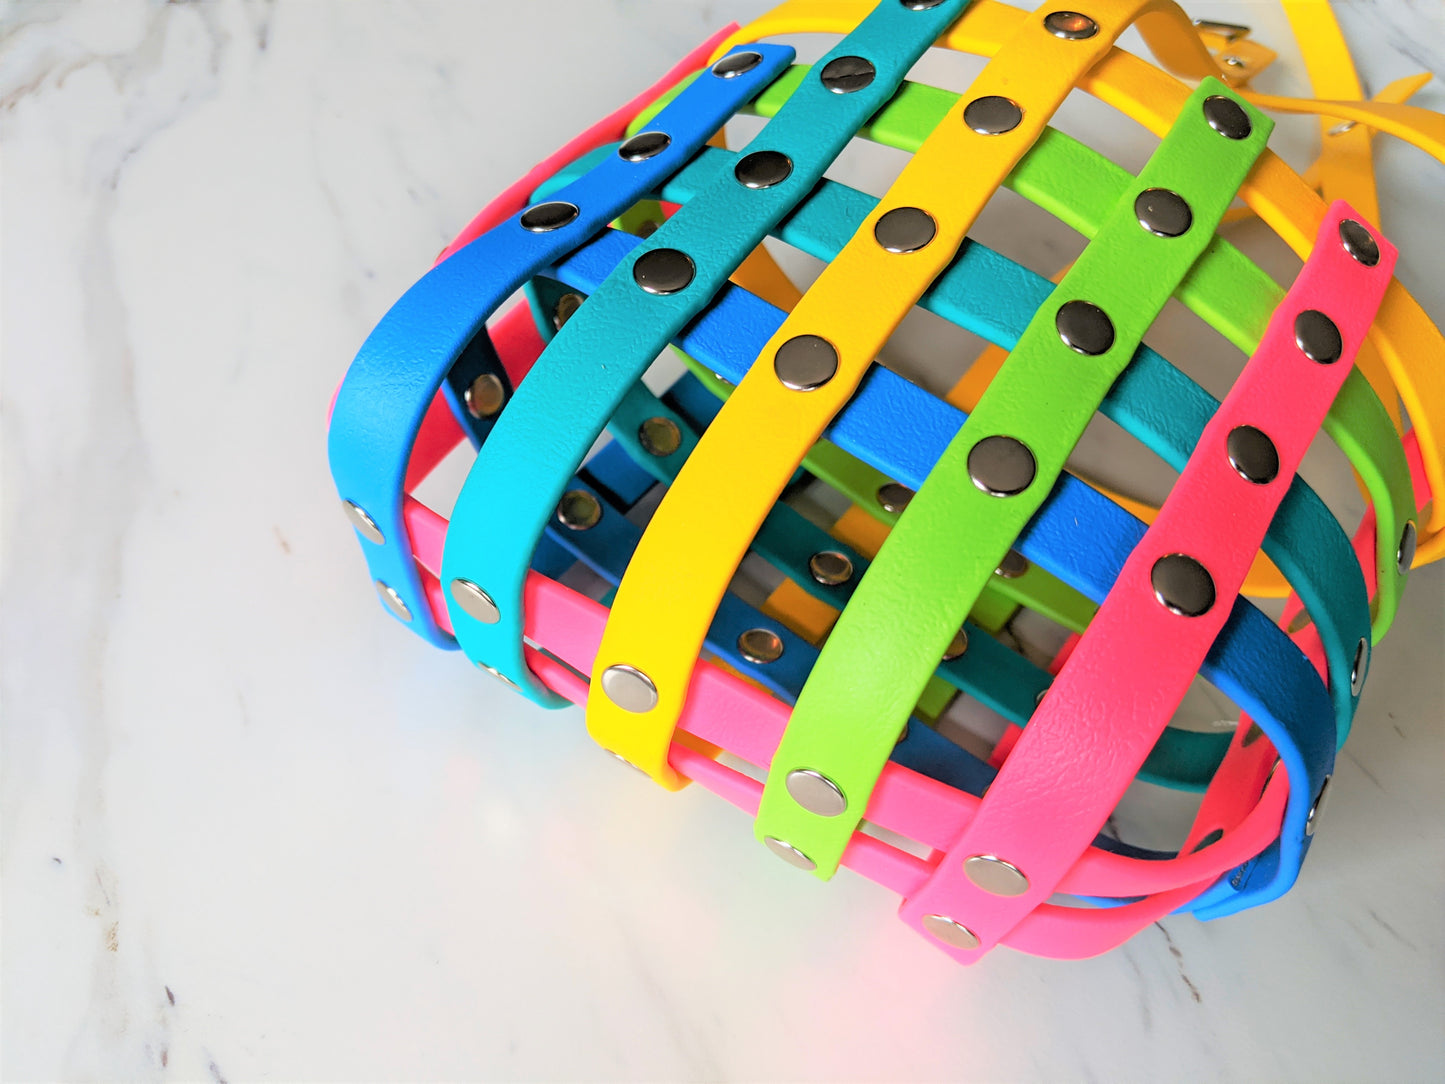 Basket Style Biothane Muzzle - Rainbow Colors - Level Two